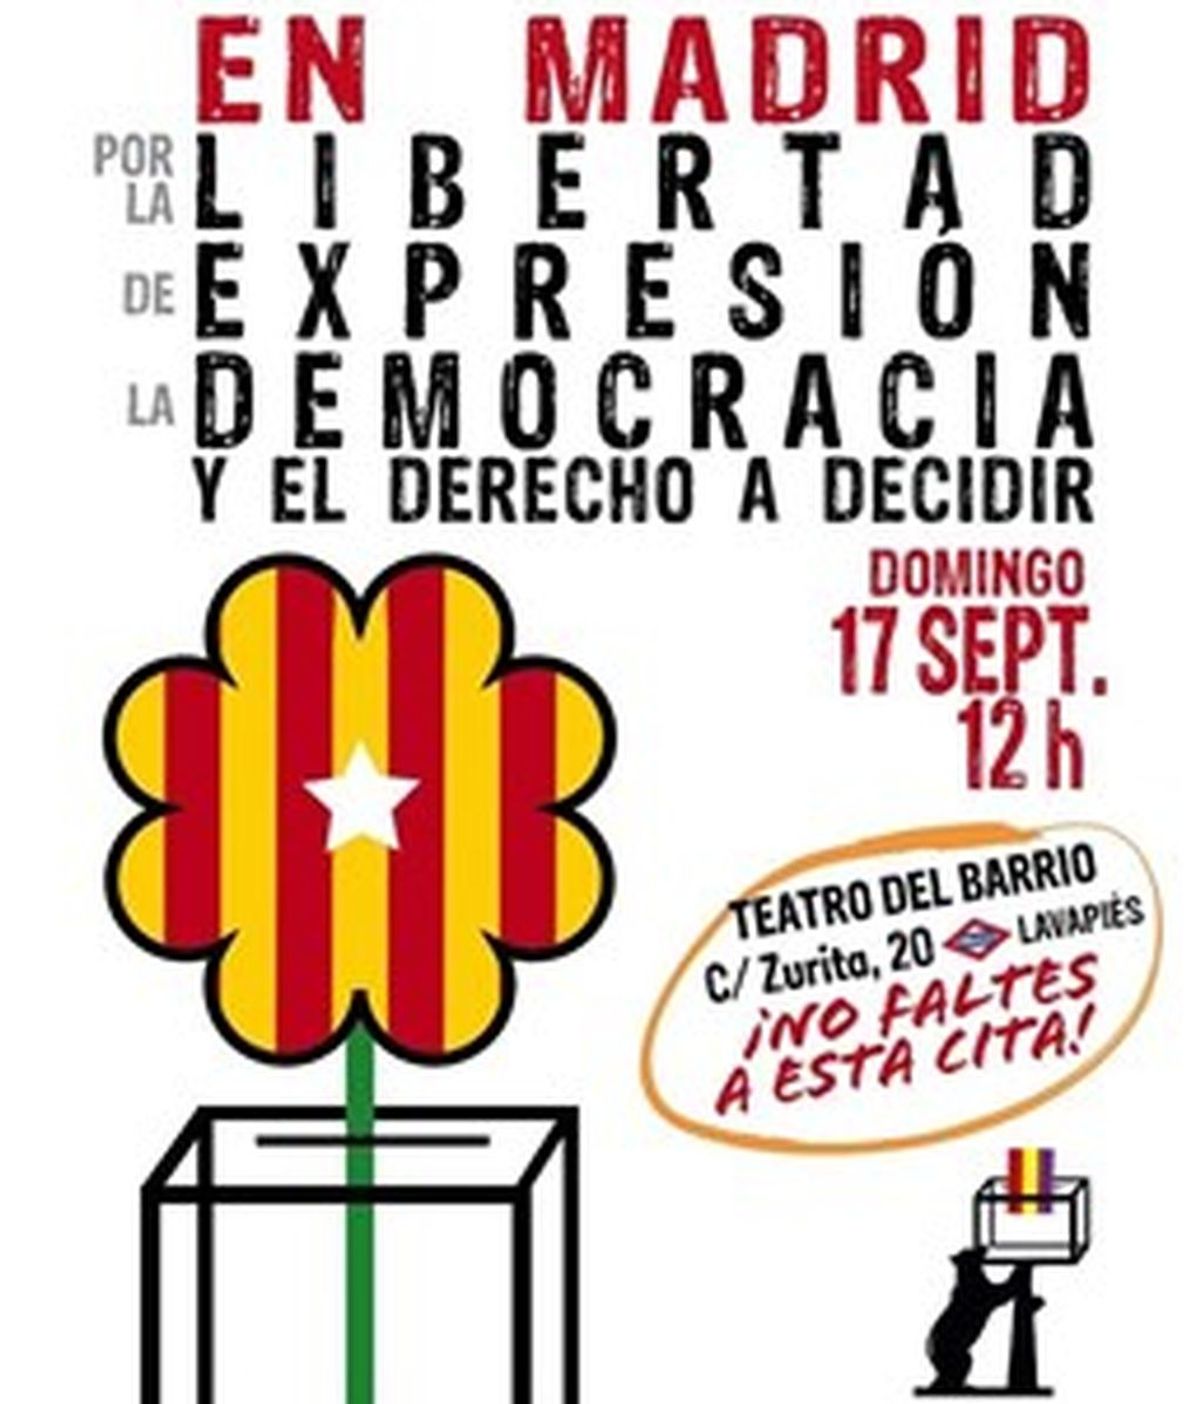 El acto a favor del referéndum catalán se celebrará finalmente en el Teatro del Barrio de Lavapiés